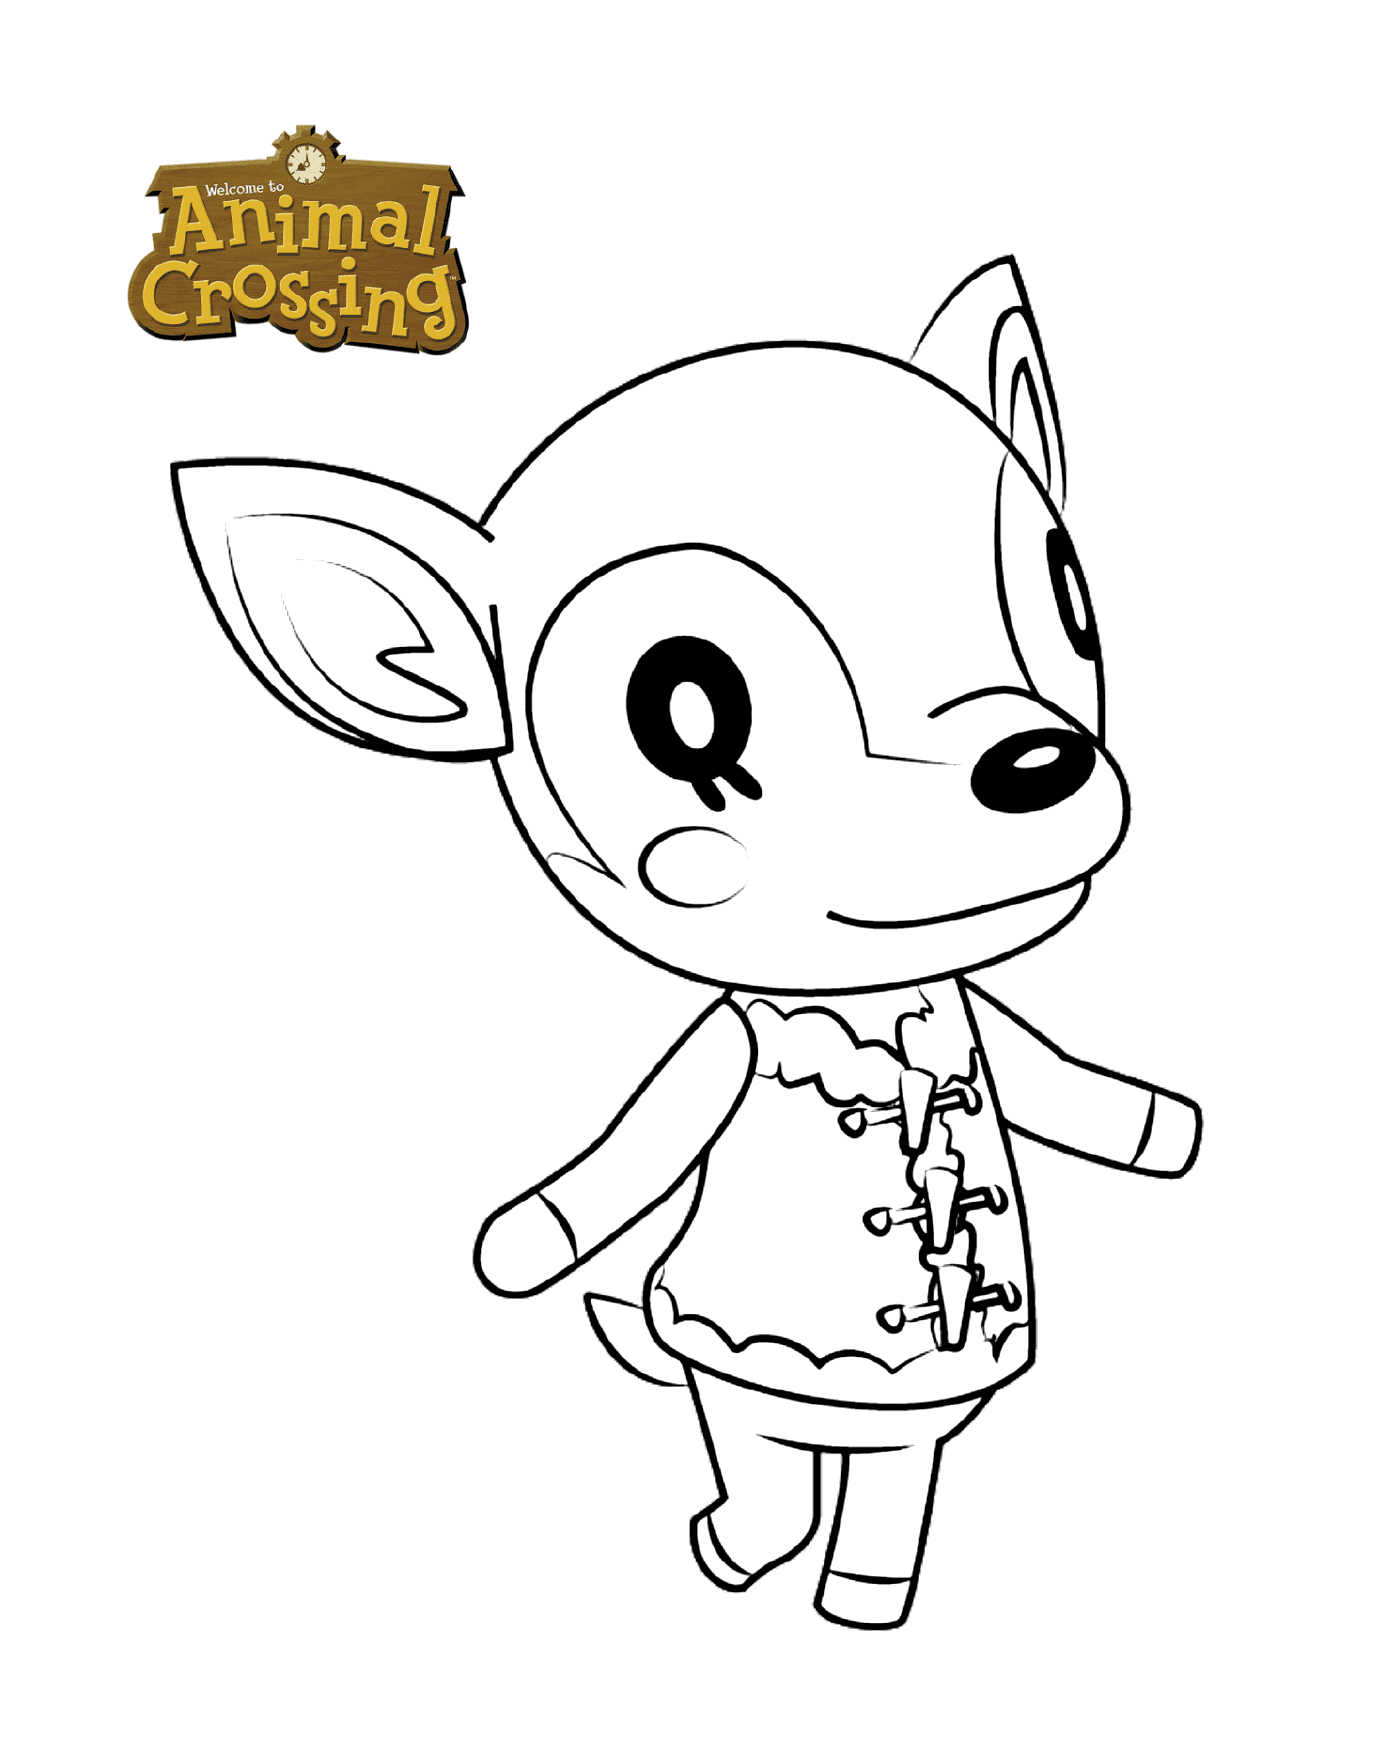  Fauna la deiche, character of Animal Crossing drawn 